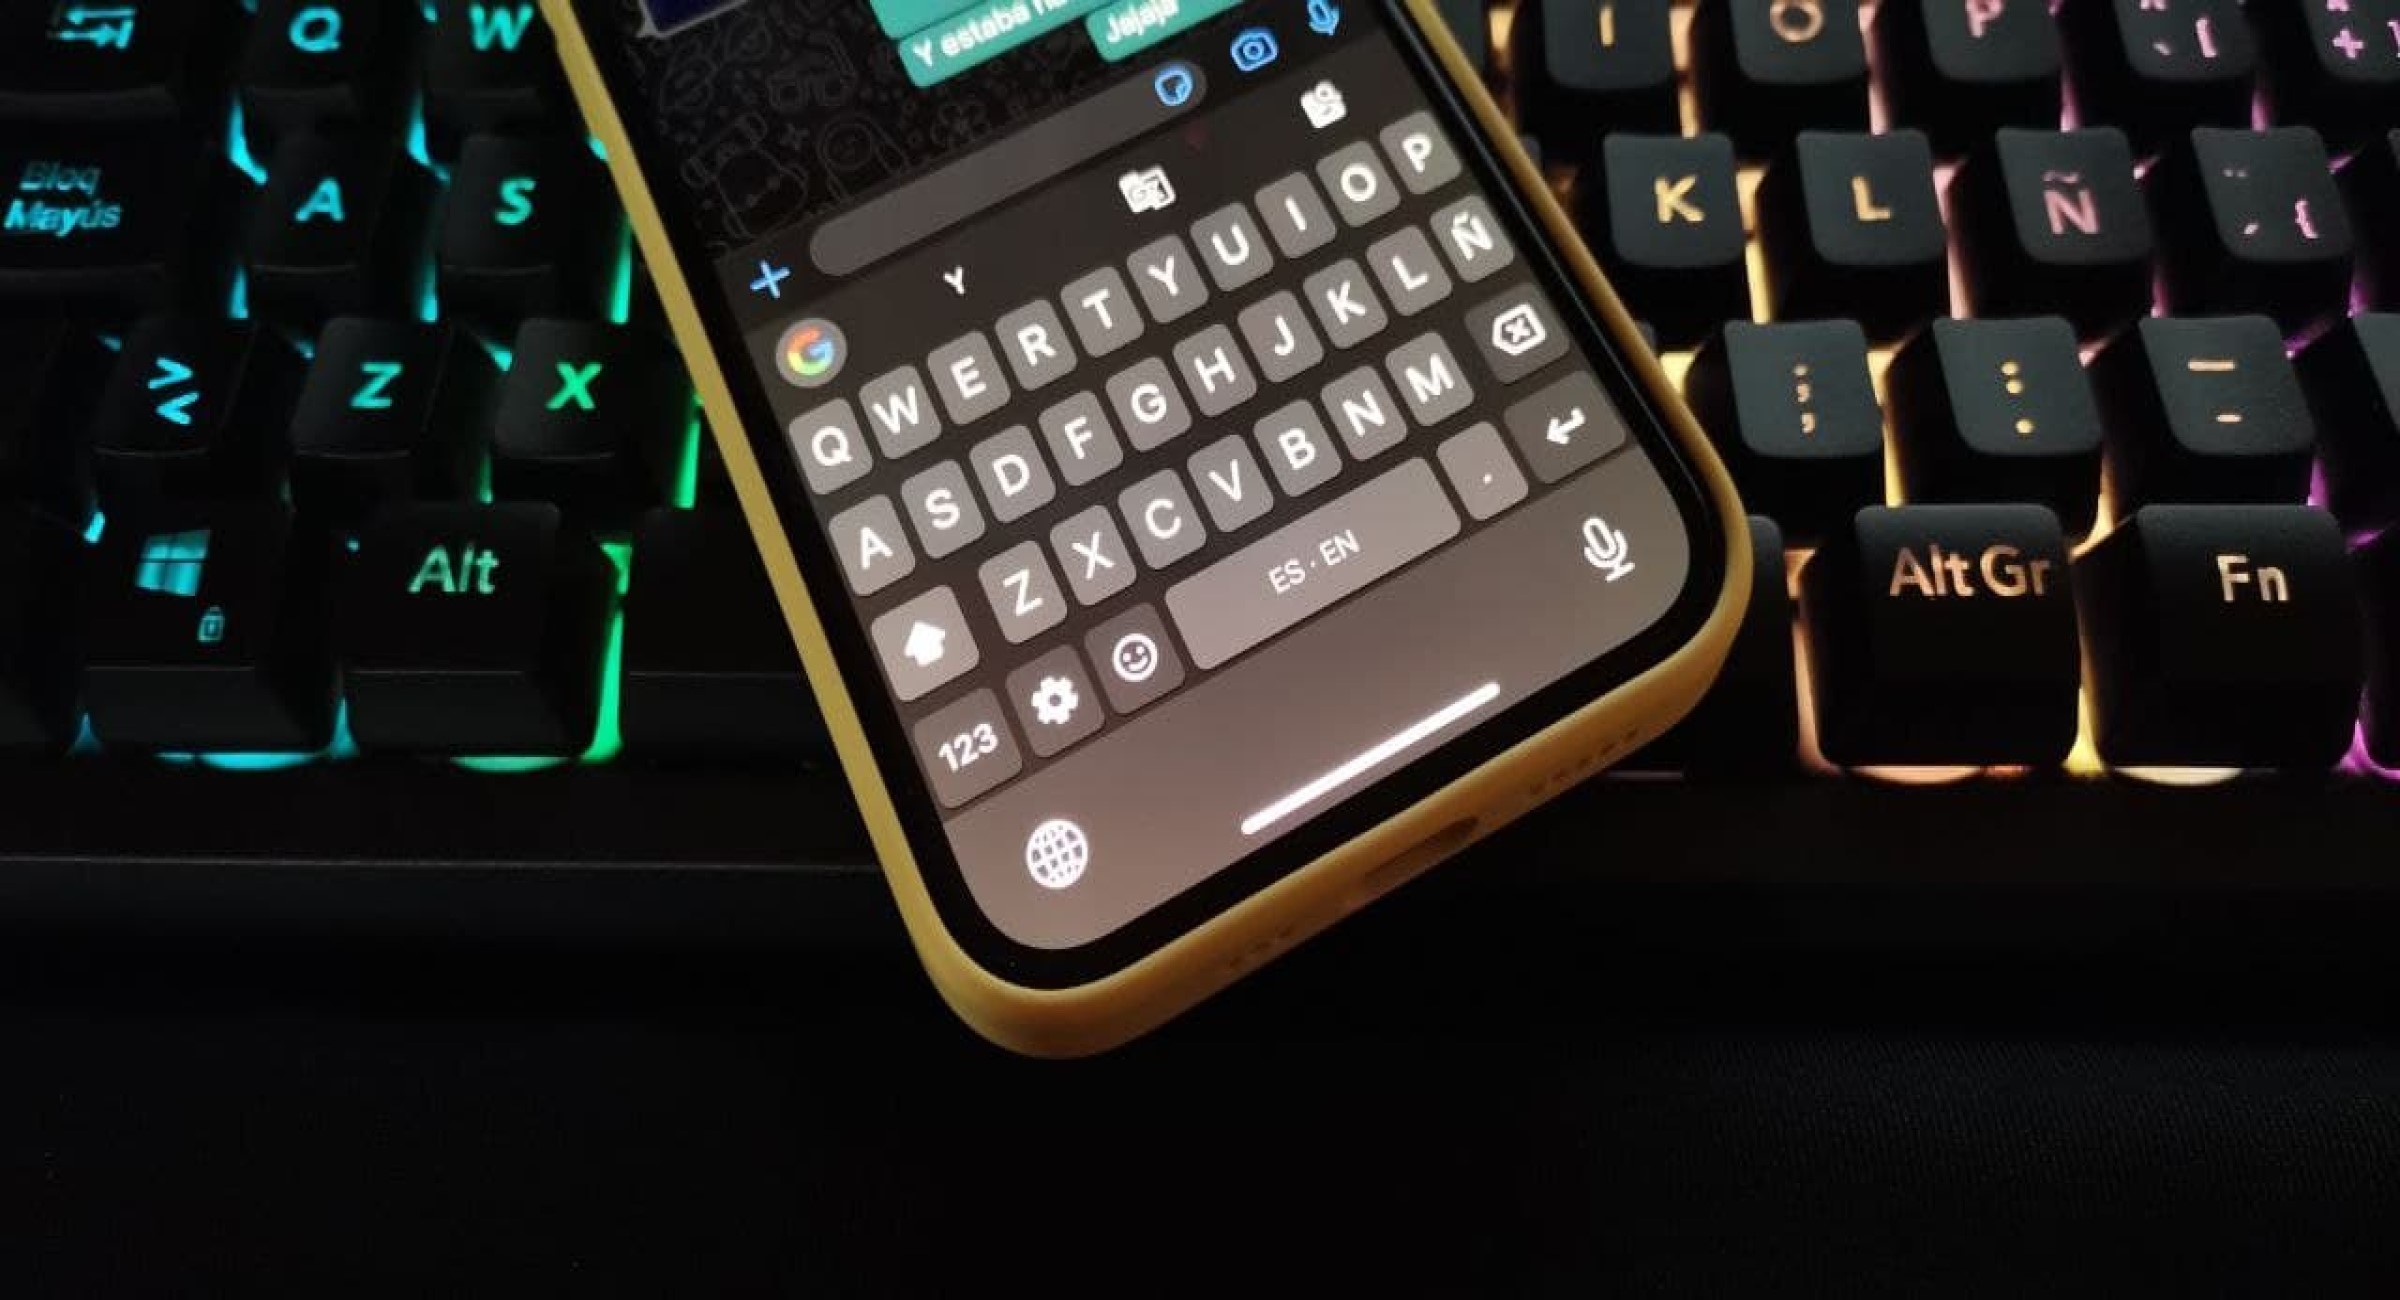 Cómo teclado predeterminado de WhatsApp por uno mejor | Tecnología - ComputerHoy.com